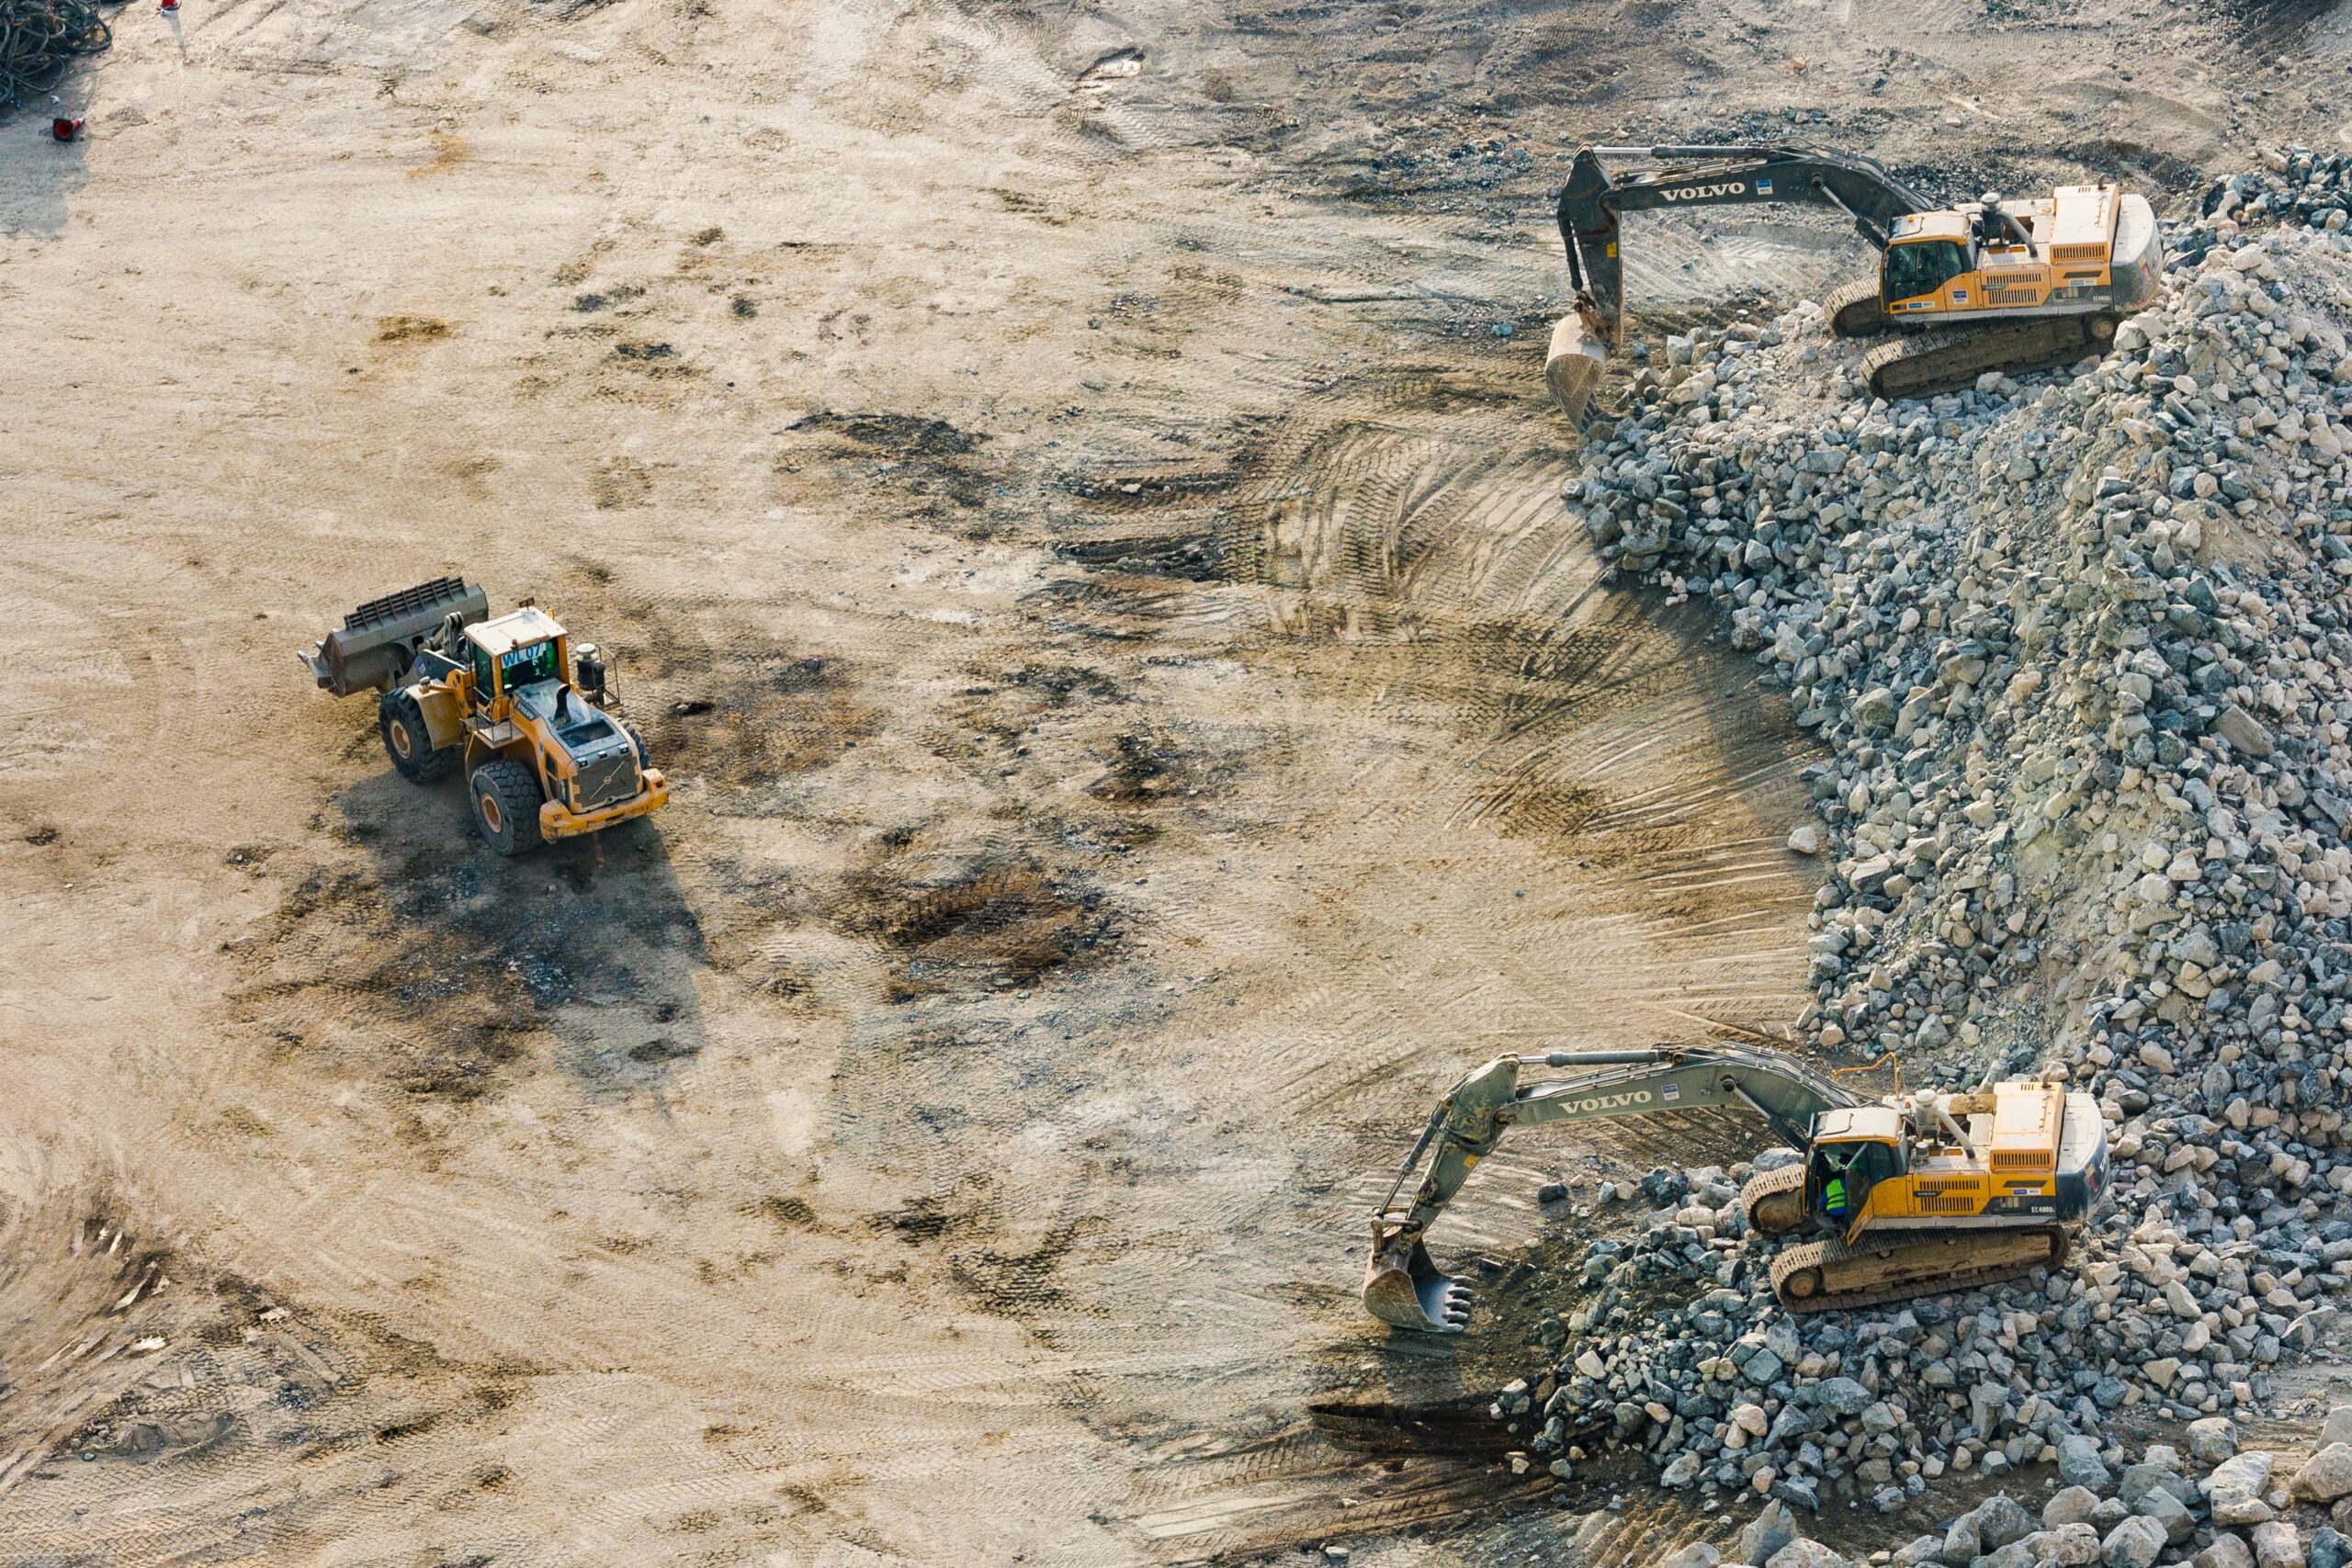 Vista aerea de maquinaria en una excavacion. (Foto de Aleksandar Pasaric)